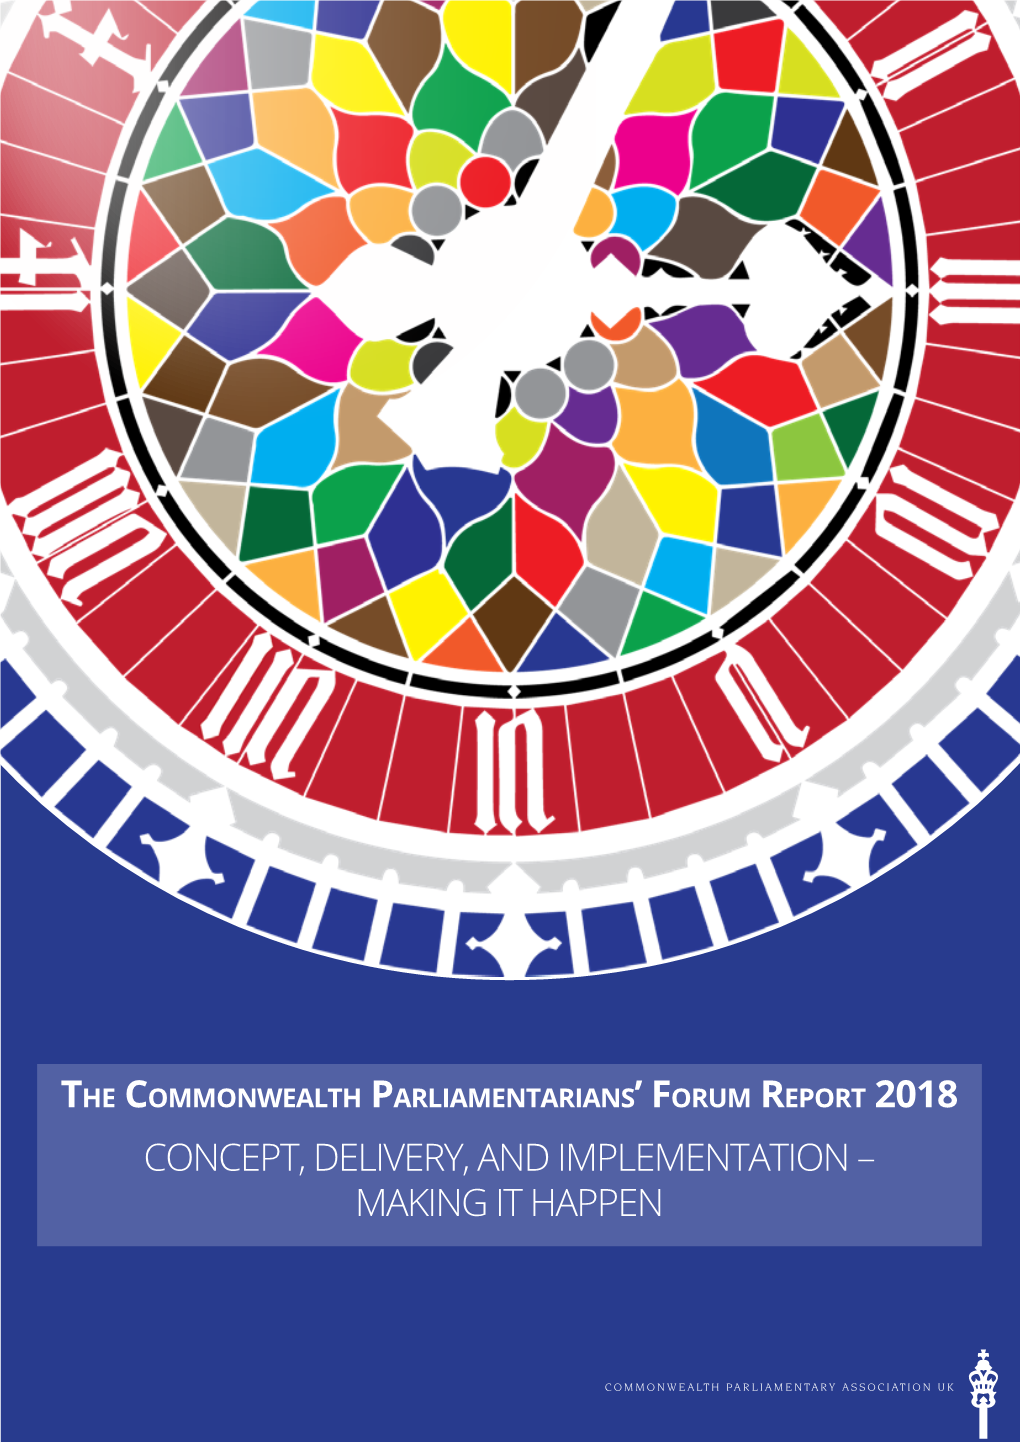 Commonwealth Parliamentarians' Forum Report 2018